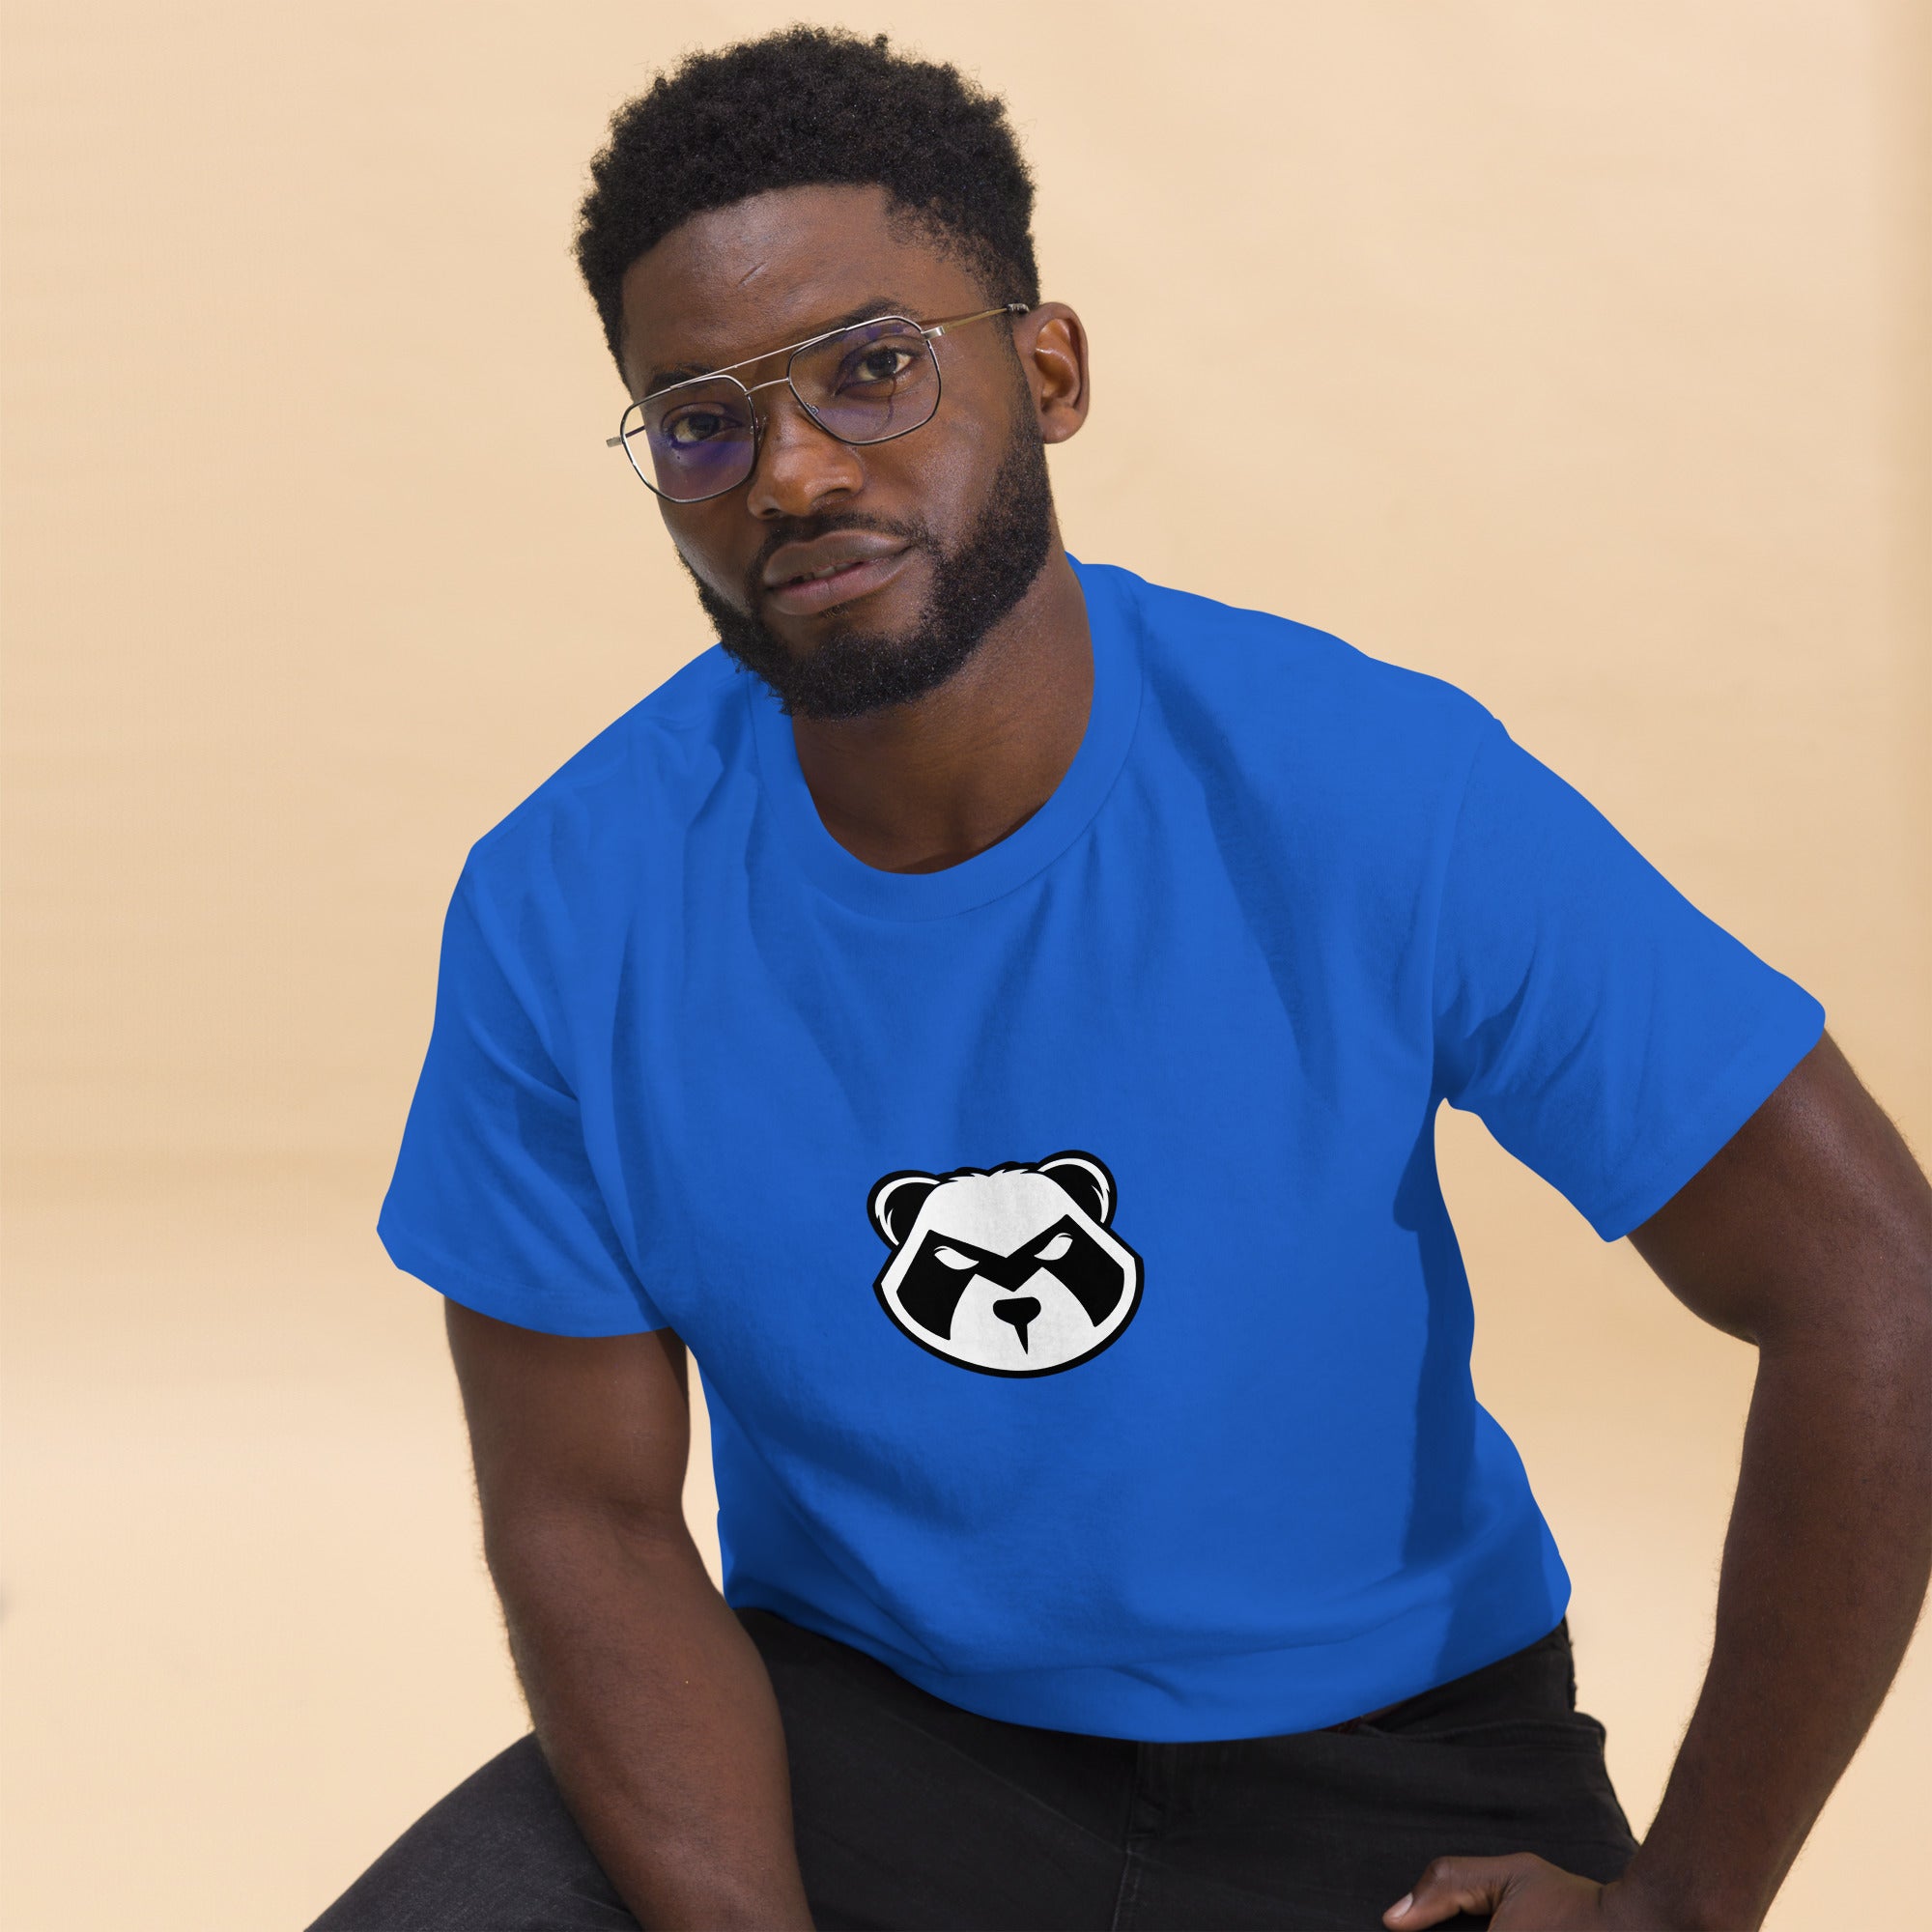 Panda Mastro Logo Men's classic tee